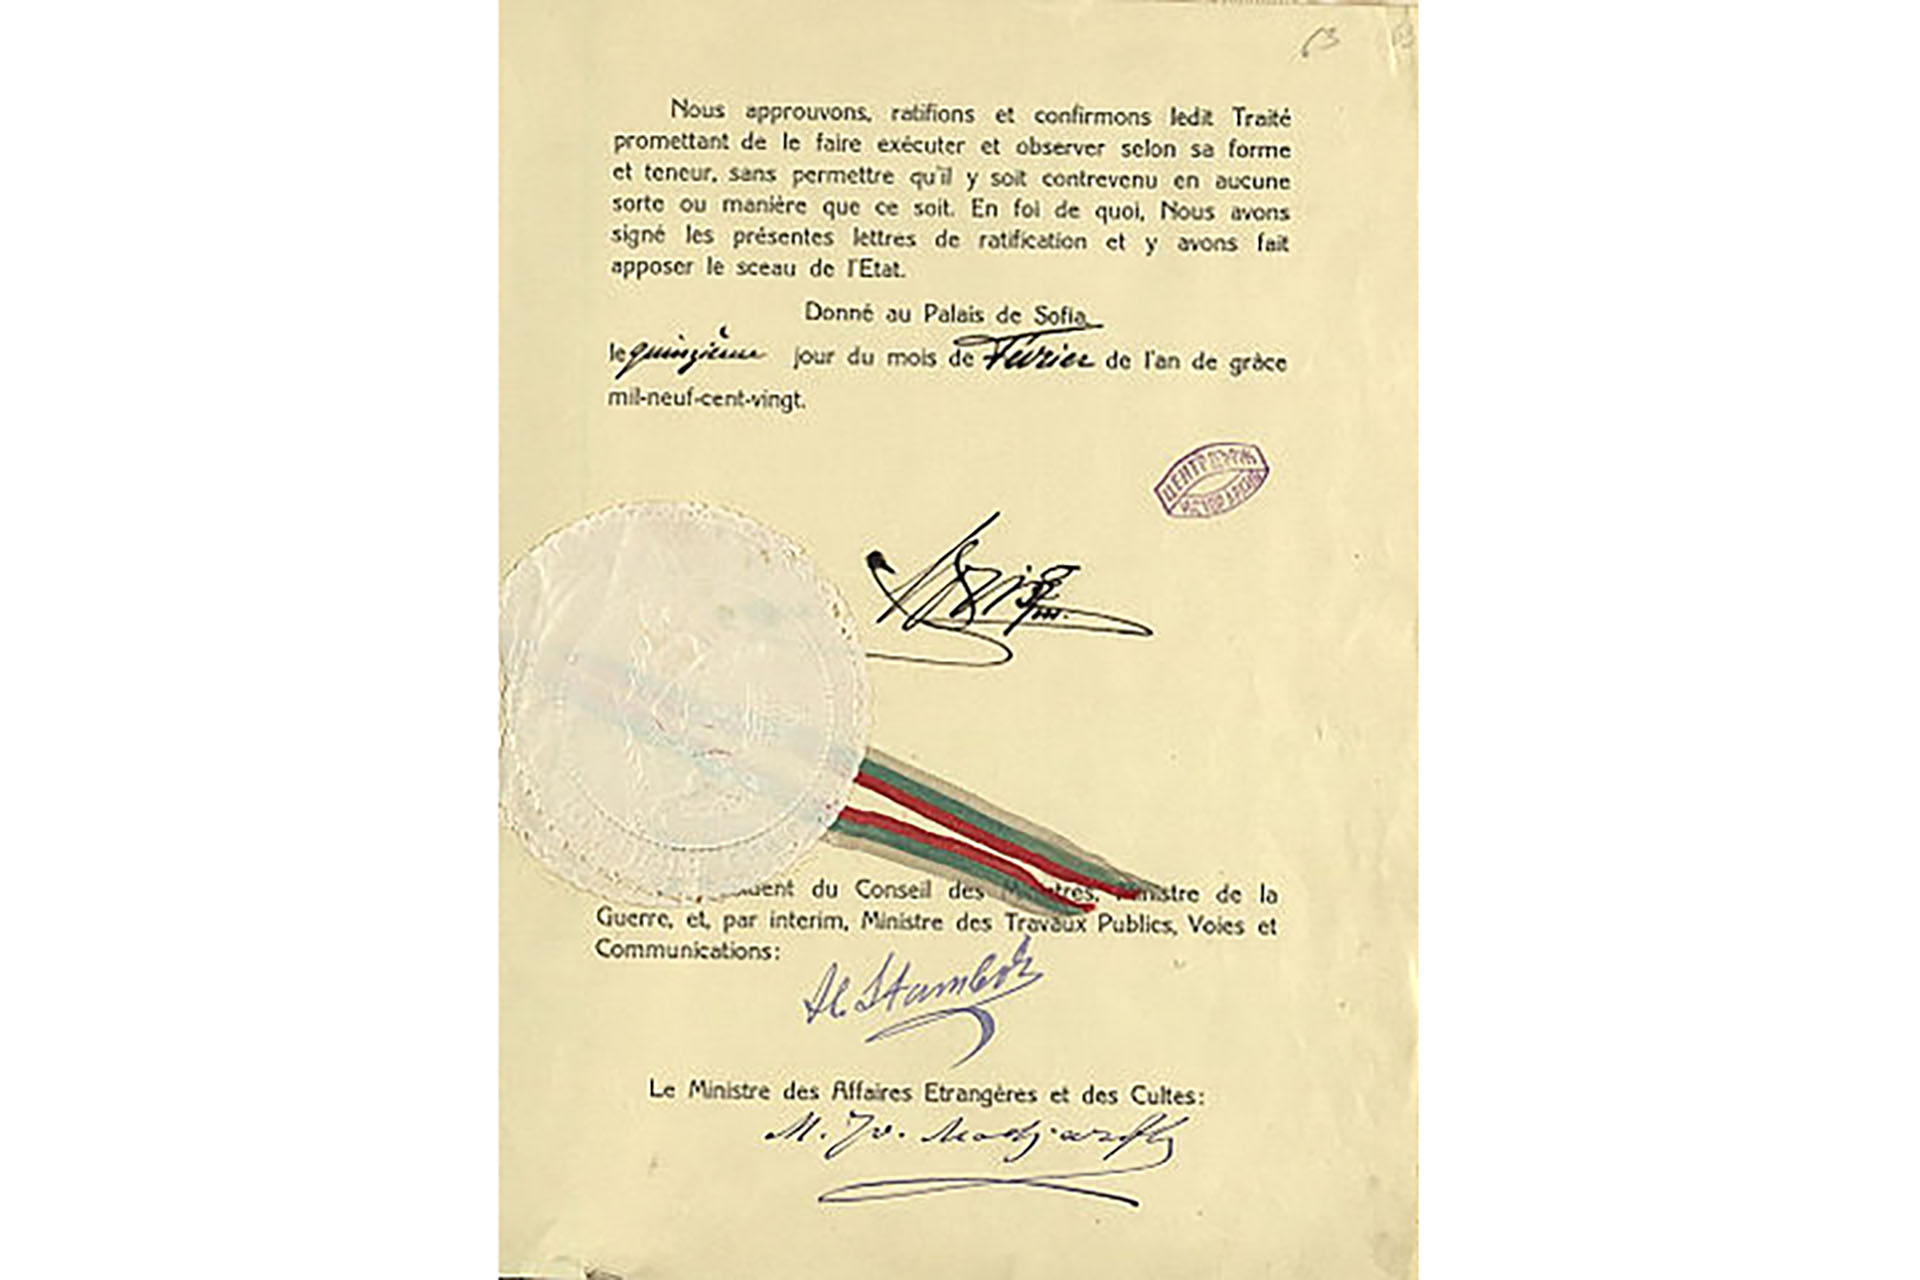 Υπογράφεται η συνθήκη του Νεϊγύ ανάμεσα στη Βουλγαρία και τους συμμάχους της Αντάντ. Η Βουλγαρία παραιτείται των κυριαρχικών της δικαιωμάτων επί της Δυτικής Θράκης, ενώ ειδική συνθήκη που υπογράφει με την Ελλάδα προβλέπει την εθελούσια ανταλλαγή ελληνικών και βουλγαρικών πληθυσμών.